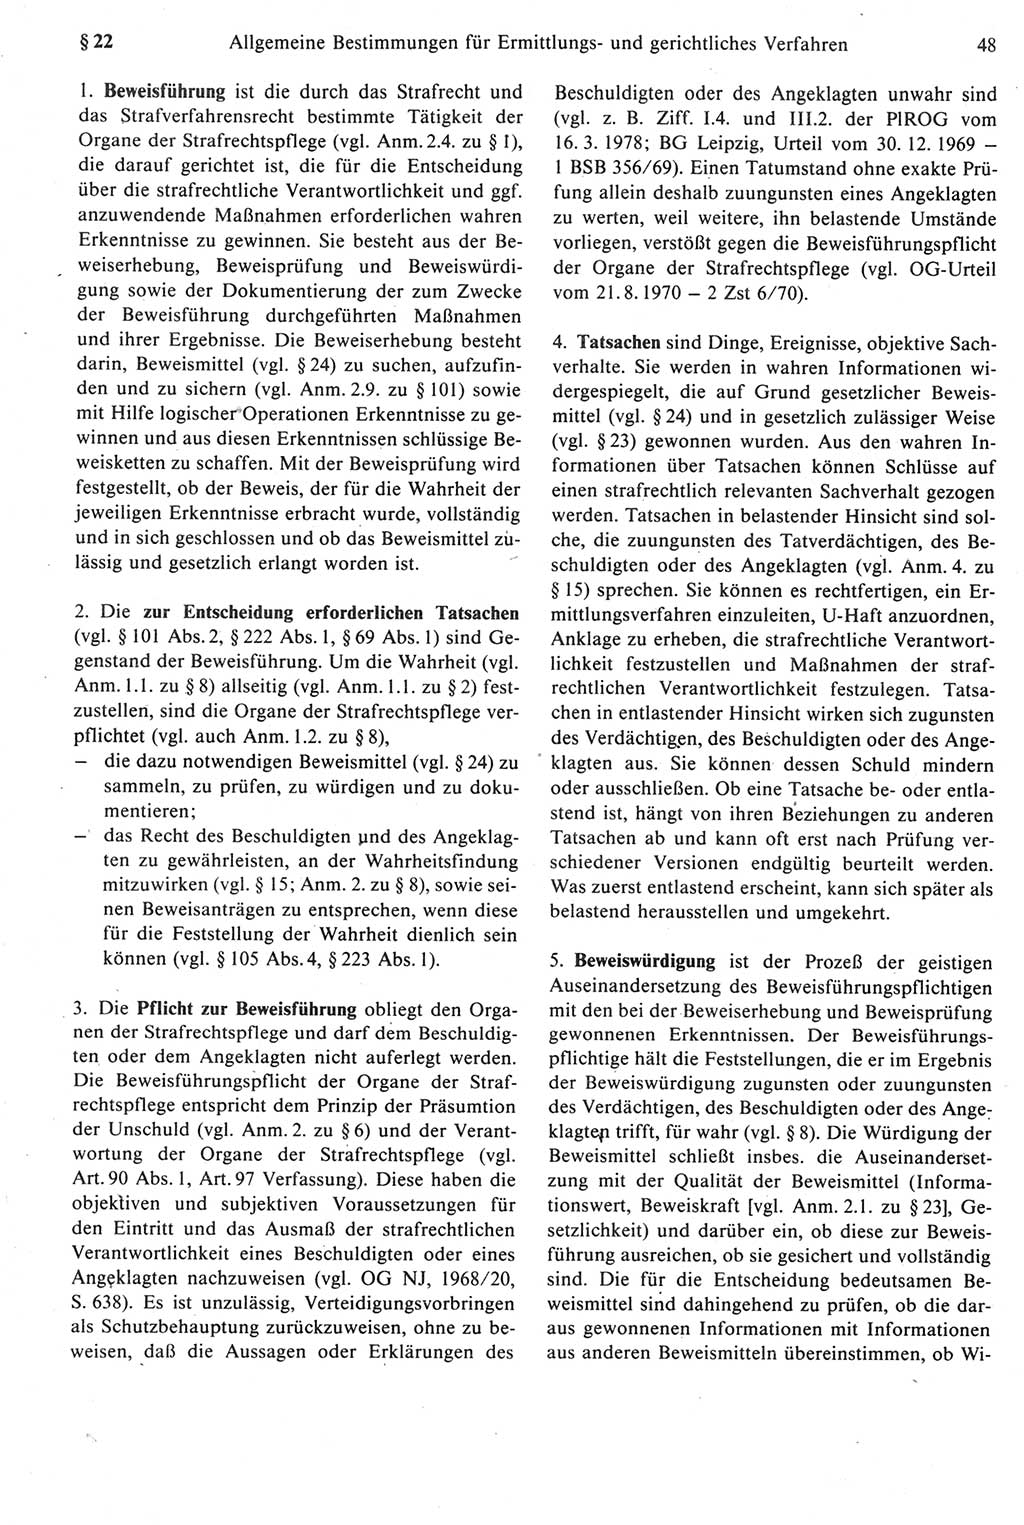 Strafprozeßrecht der DDR [Deutsche Demokratische Republik], Kommentar zur Strafprozeßordnung (StPO) 1987, Seite 48 (Strafprozeßr. DDR Komm. StPO 1987, S. 48)